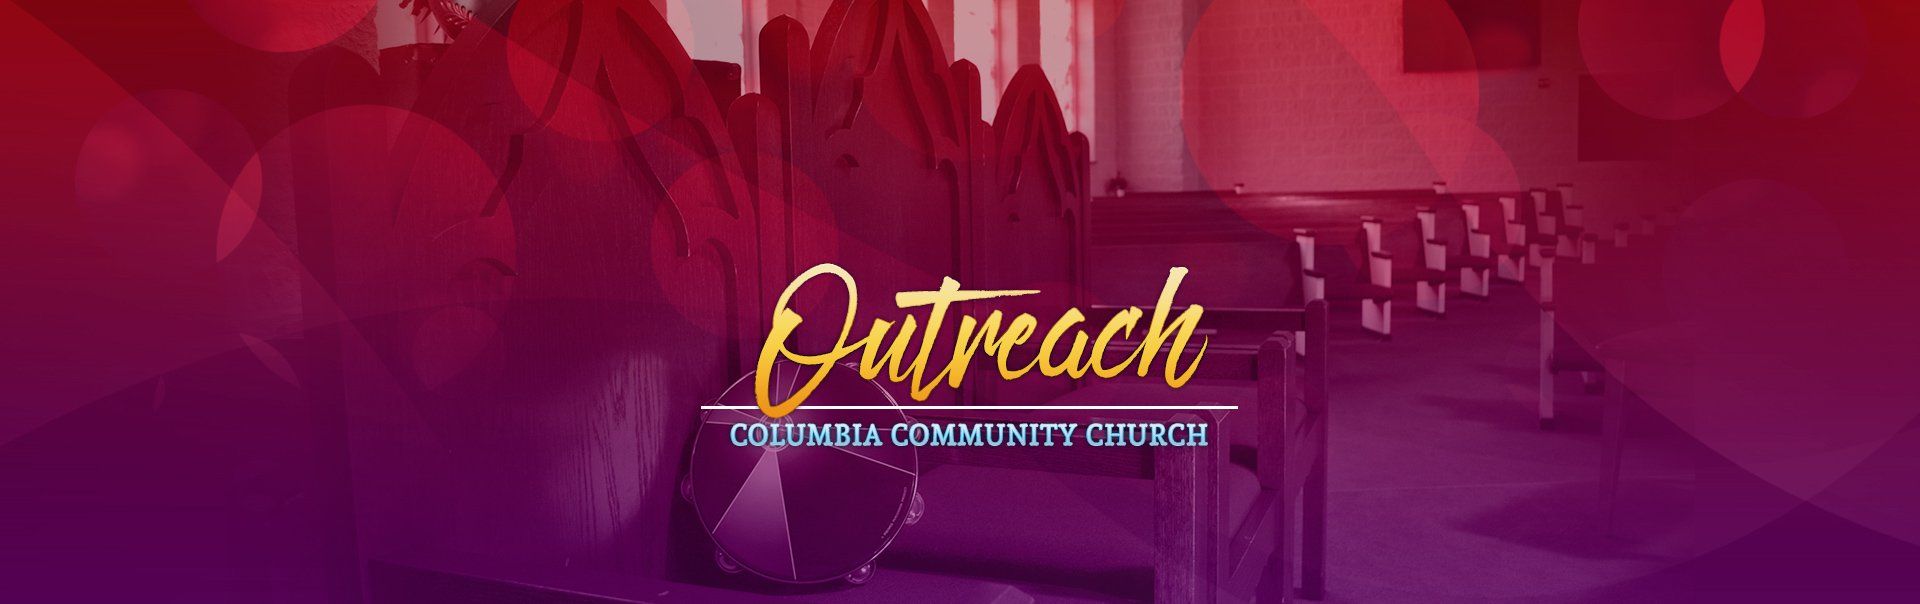 outreach columbia community church